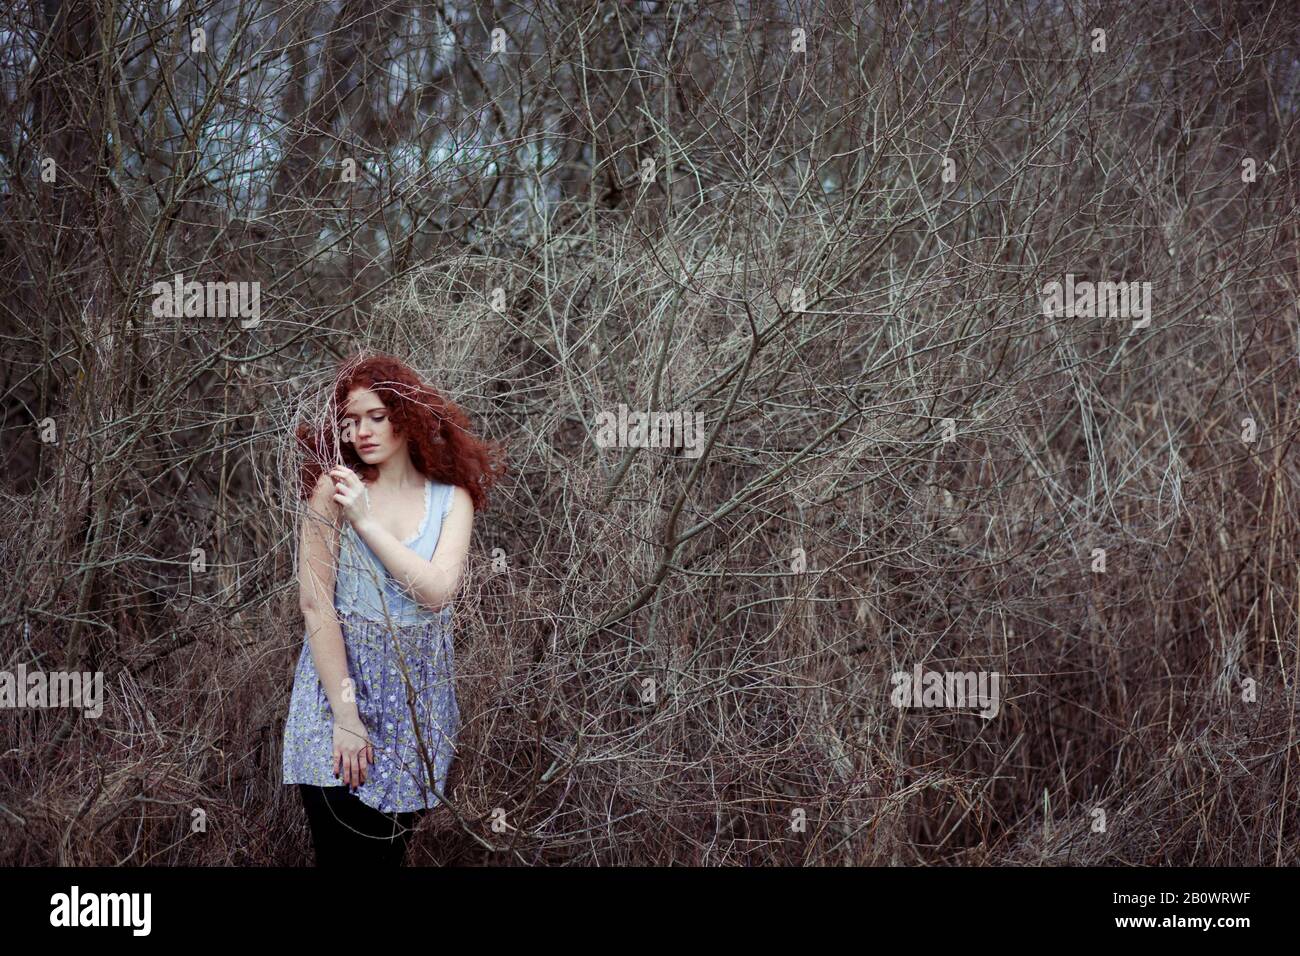 Femme aux longs cheveux rouges entre les branches, portrait Banque D'Images